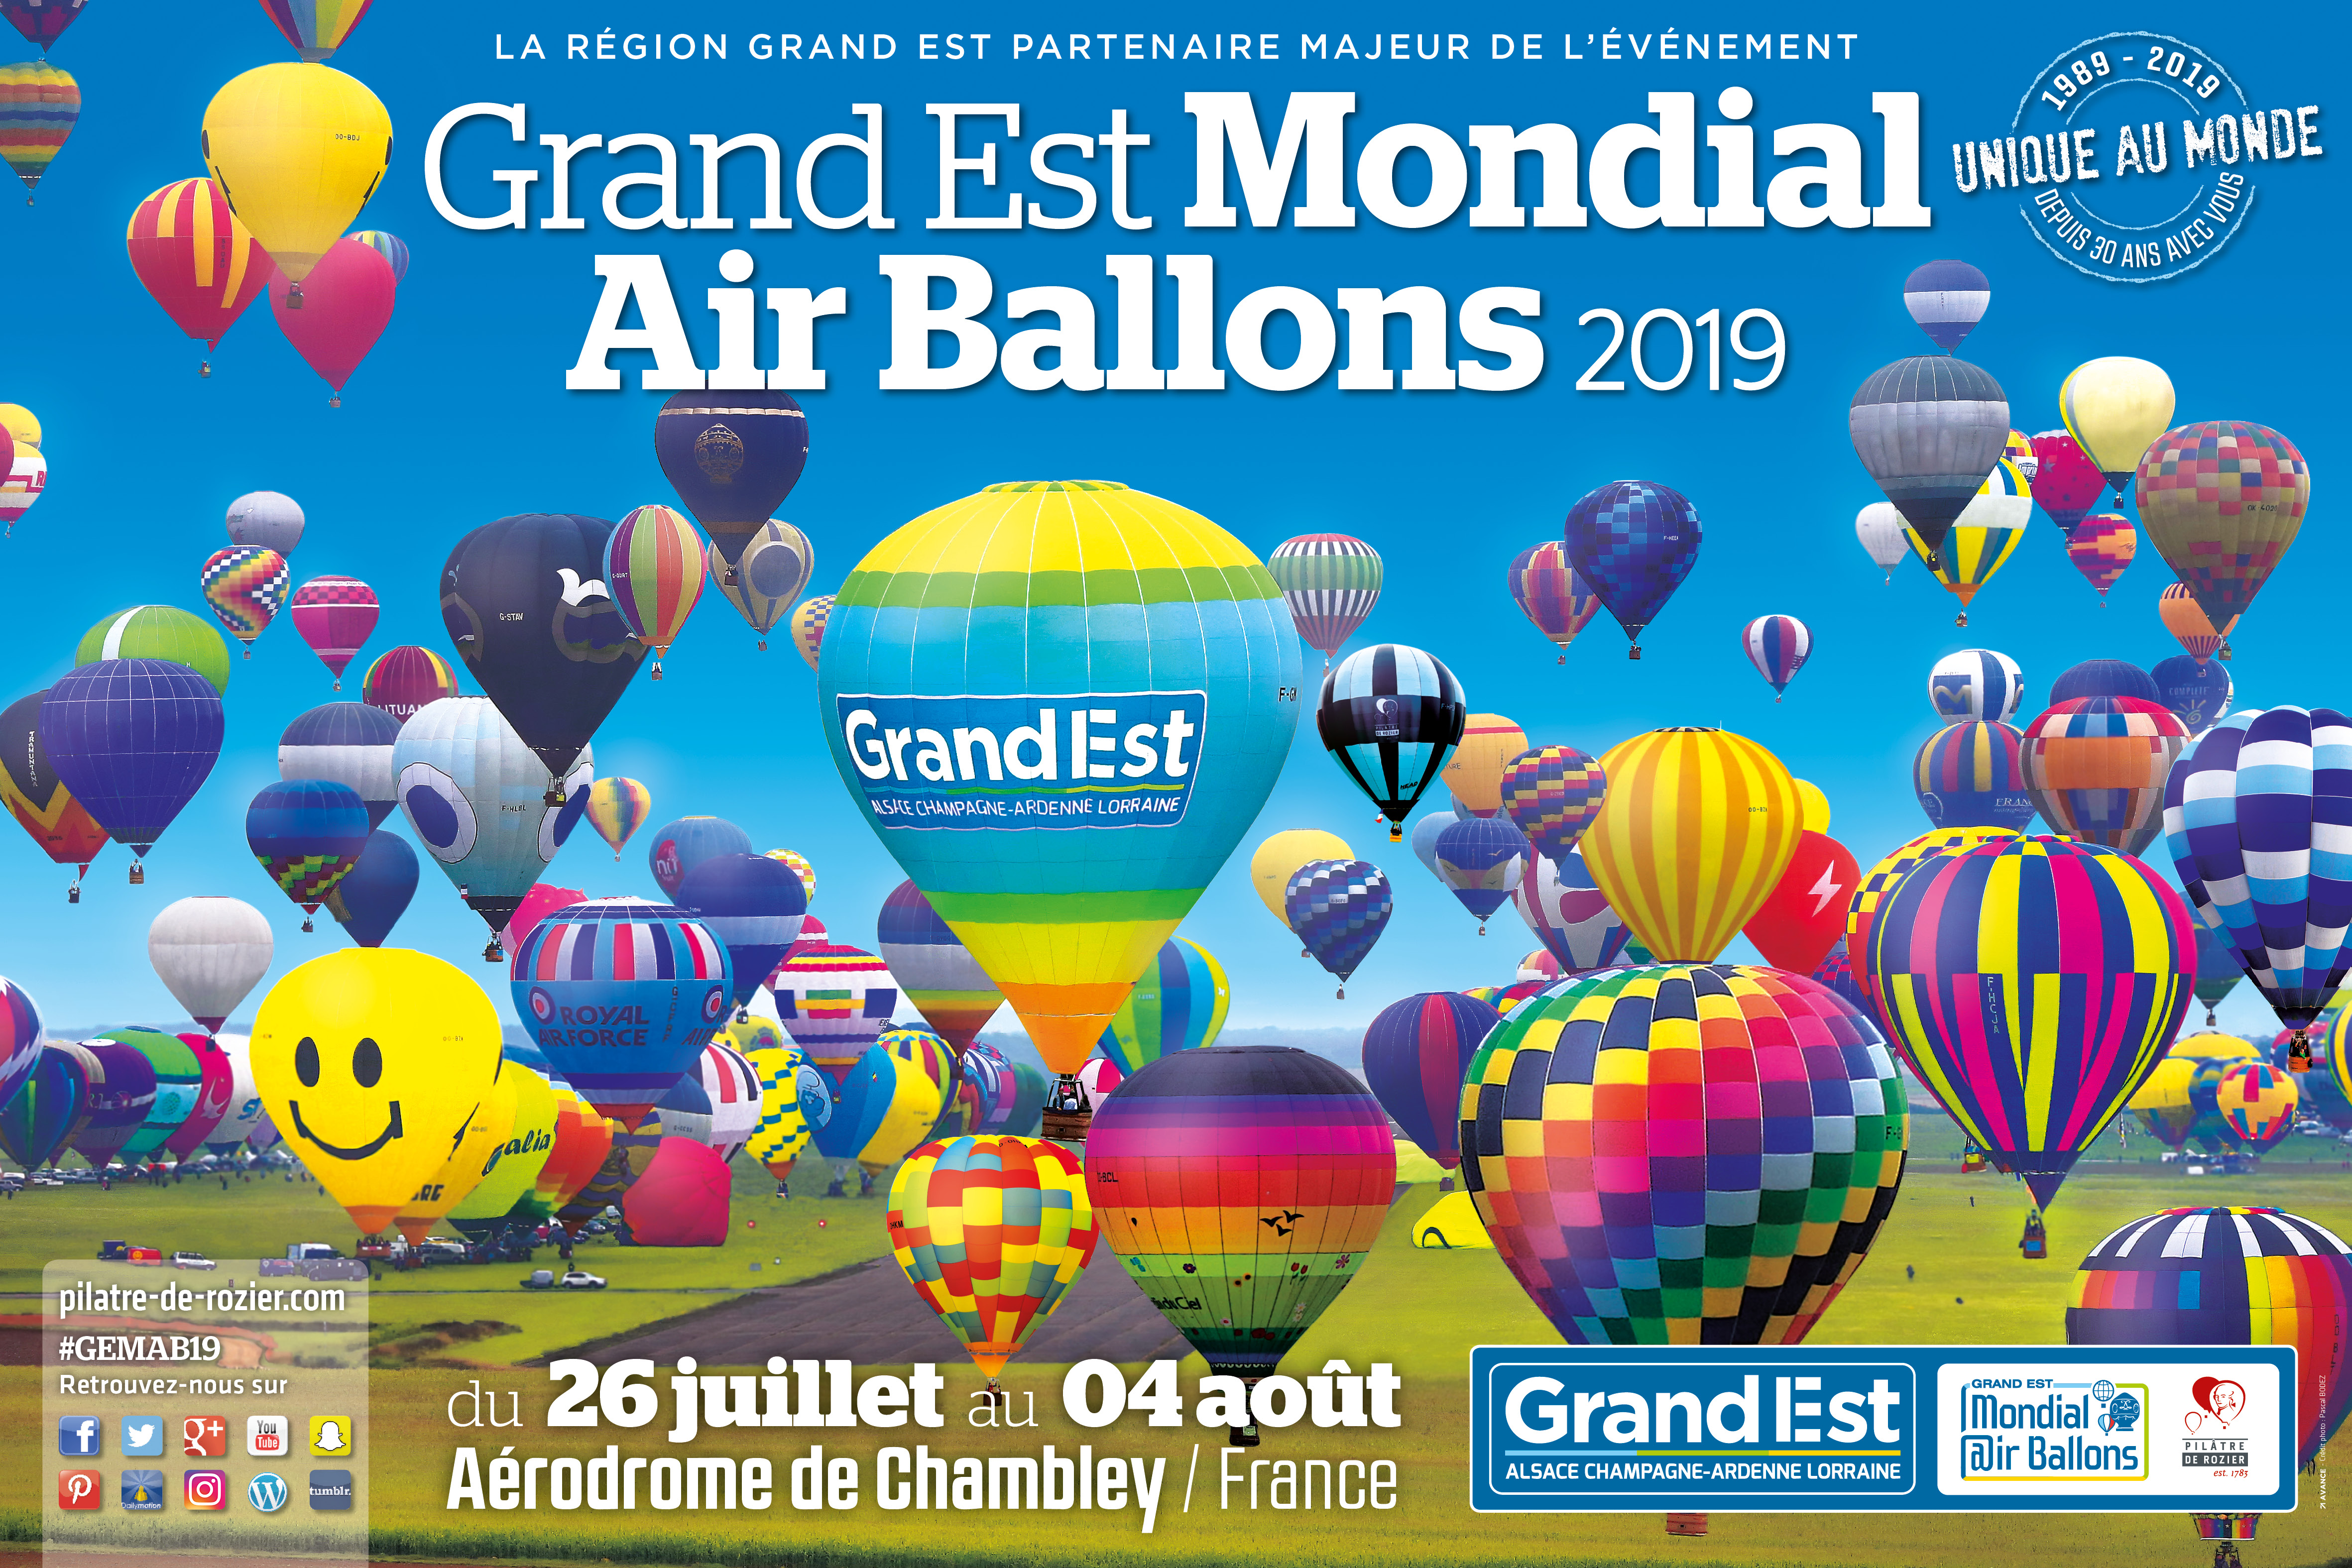 La magie du Grand Est Mondial Air Ballons® revient… Rendez-vous à l’été 2019 ! #GEMAB19